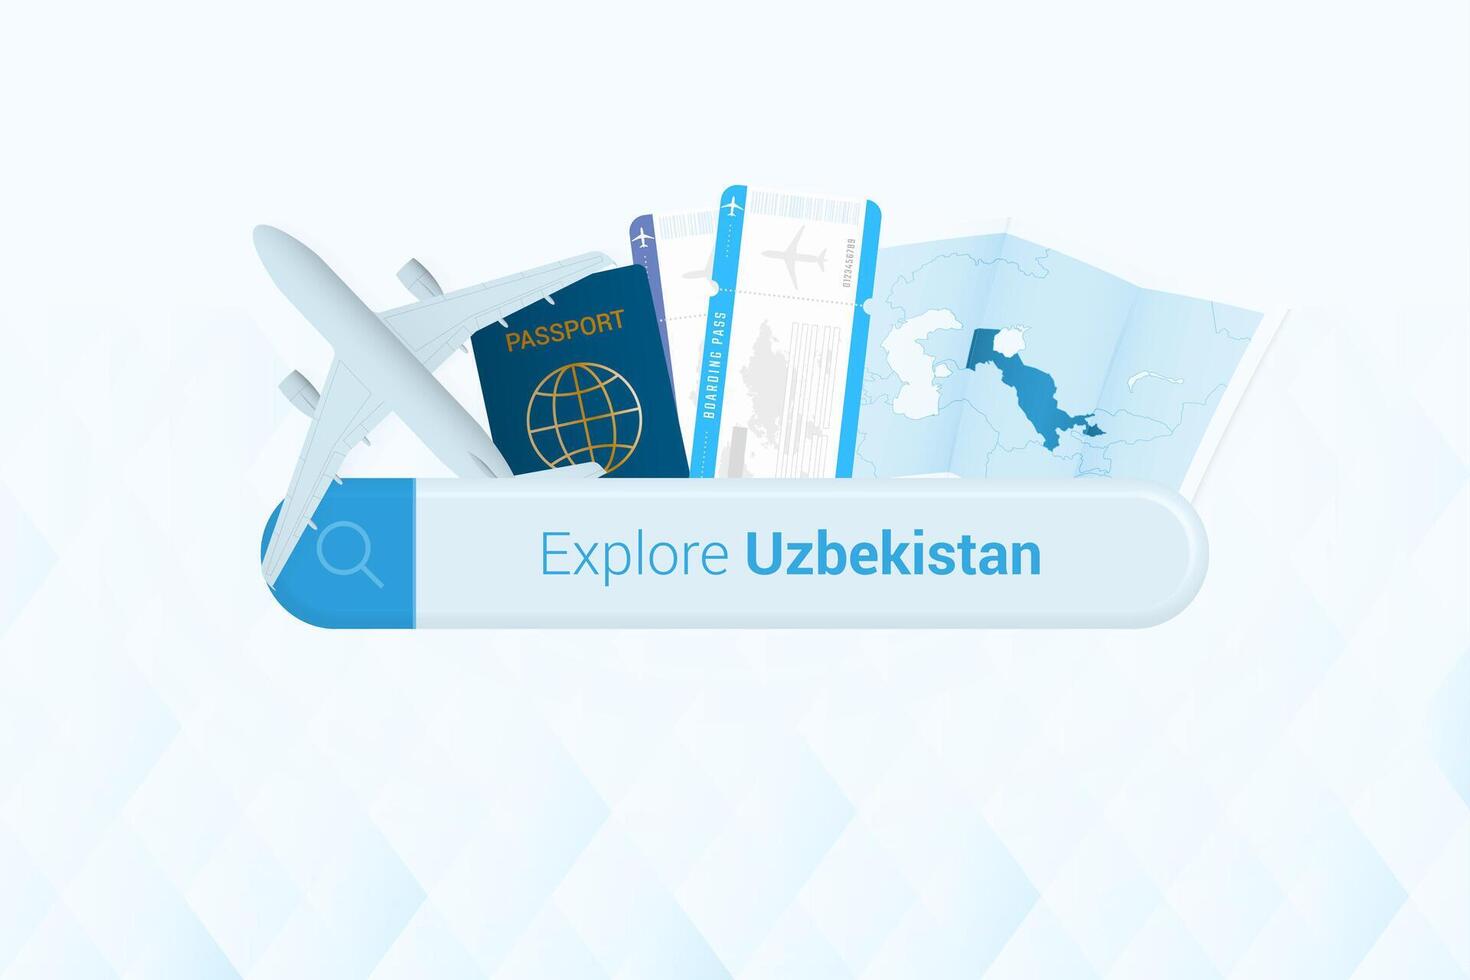 recherche des billets à Ouzbékistan ou Voyage destination dans Ouzbékistan. recherche bar avec avion, passeport, embarquement passer, des billets et carte. vecteur